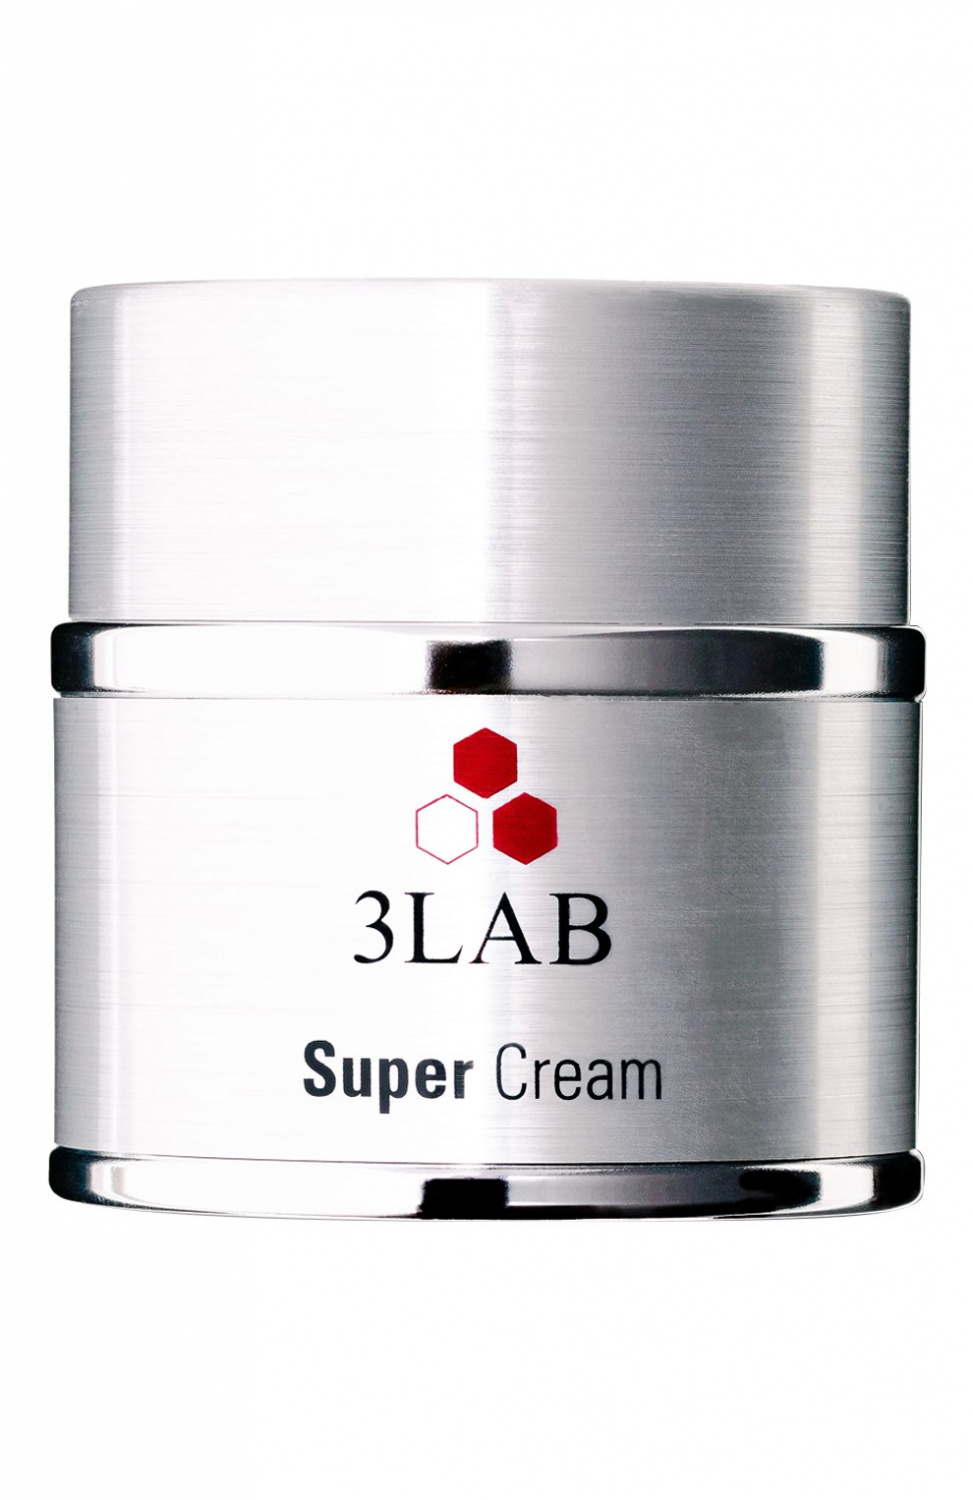 3LAB Super Cream 50ml - интернет-магазин профессиональной косметики Spadream, изображение 37306